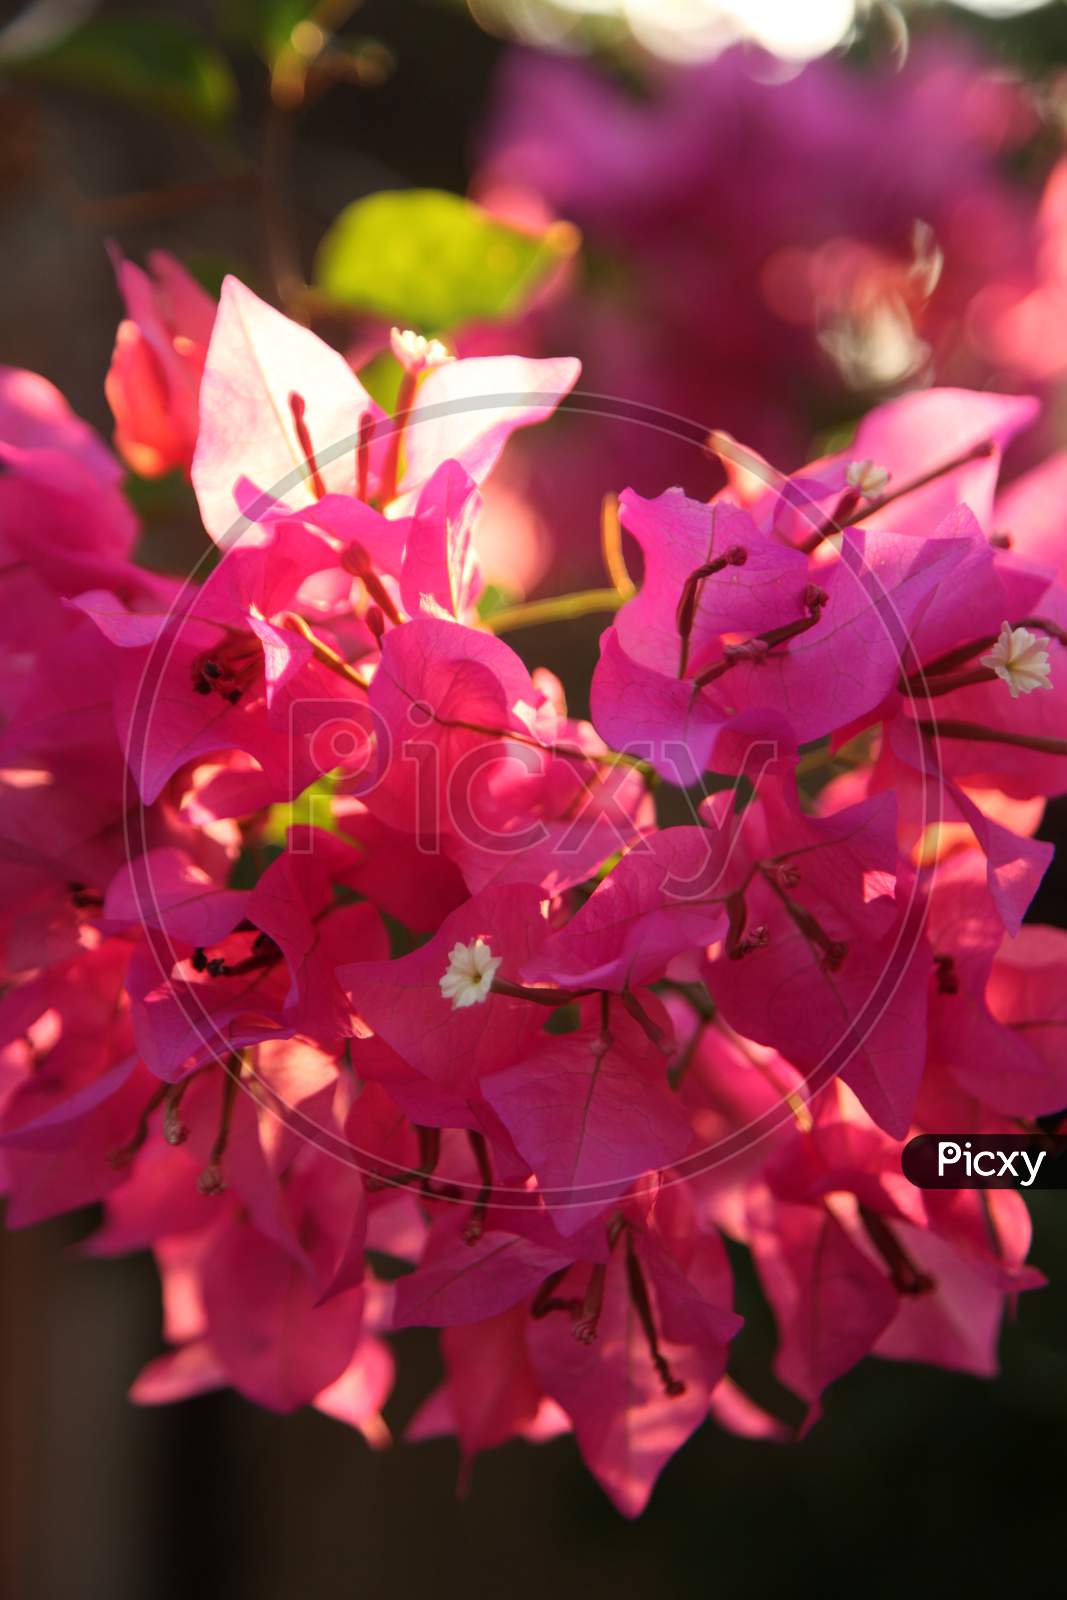 Selective Focus on bougainvillea flowers